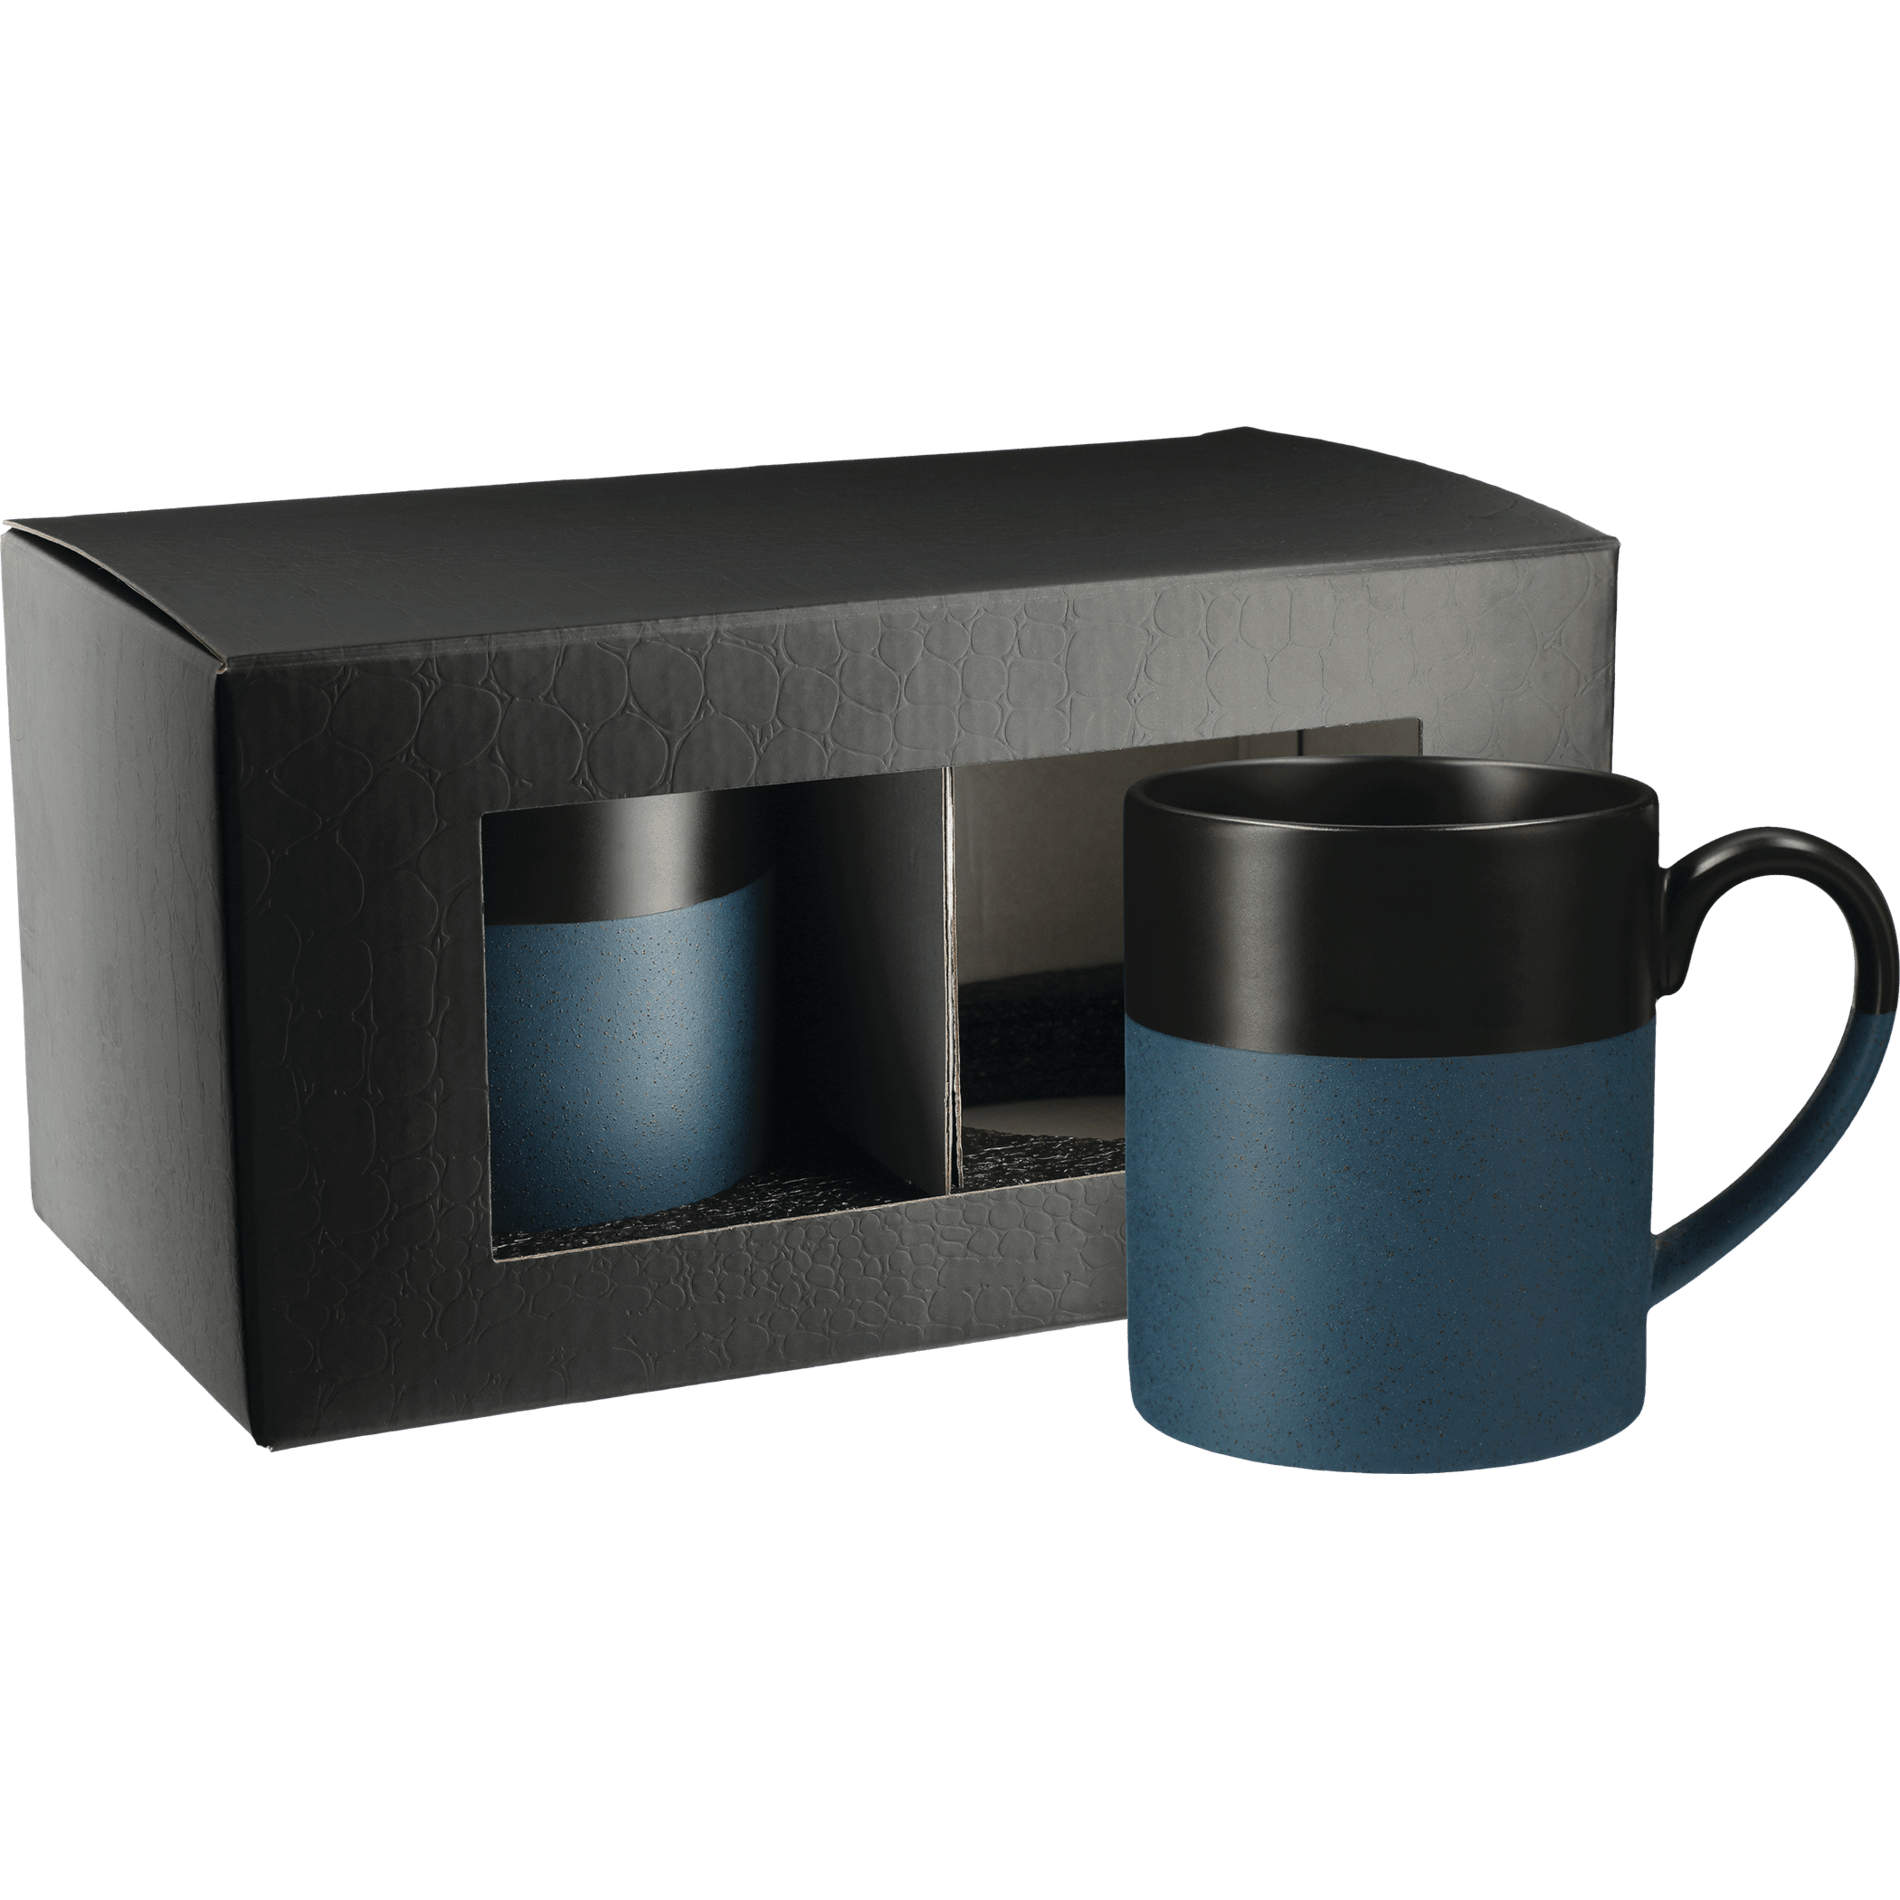 LEEDS 1628-07 - Otis Ceramic Mug 2 in 1 Gift Set